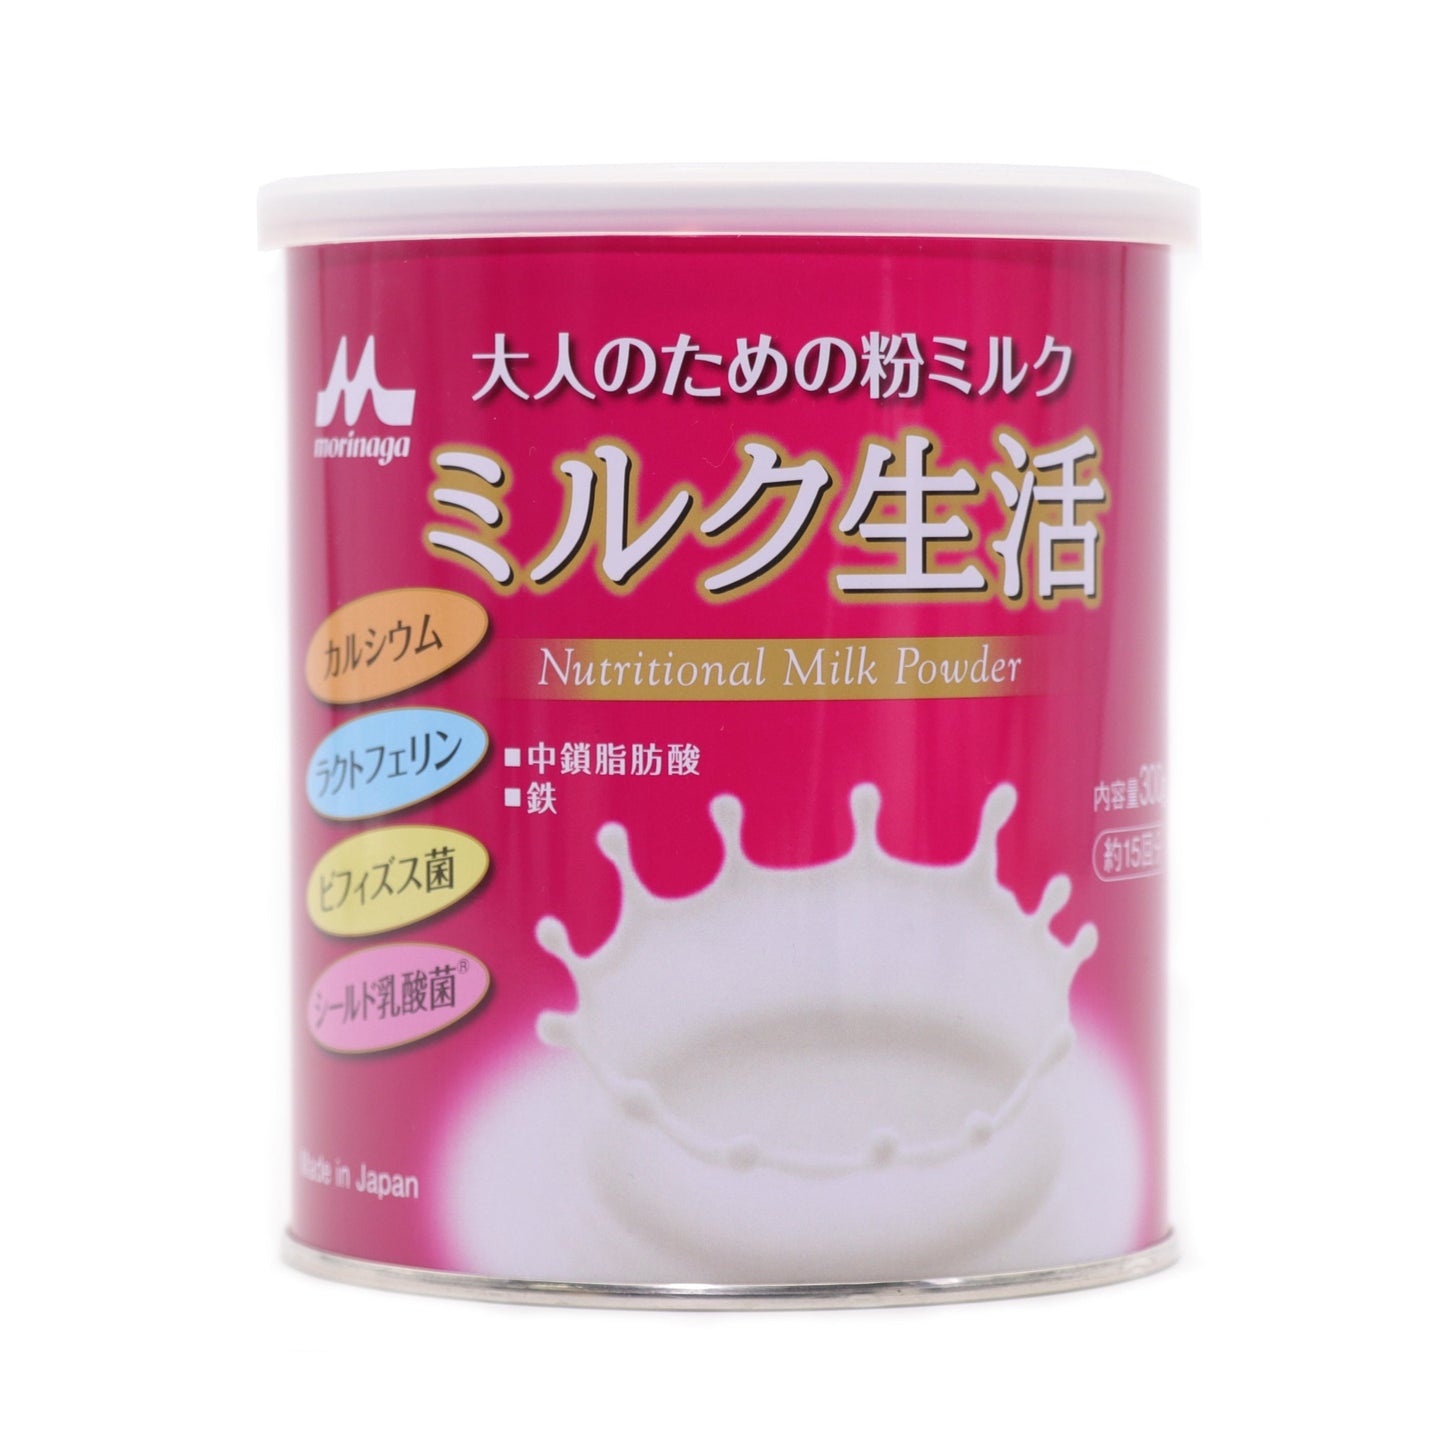 【森永製菓】牛奶生活奶粉 300g